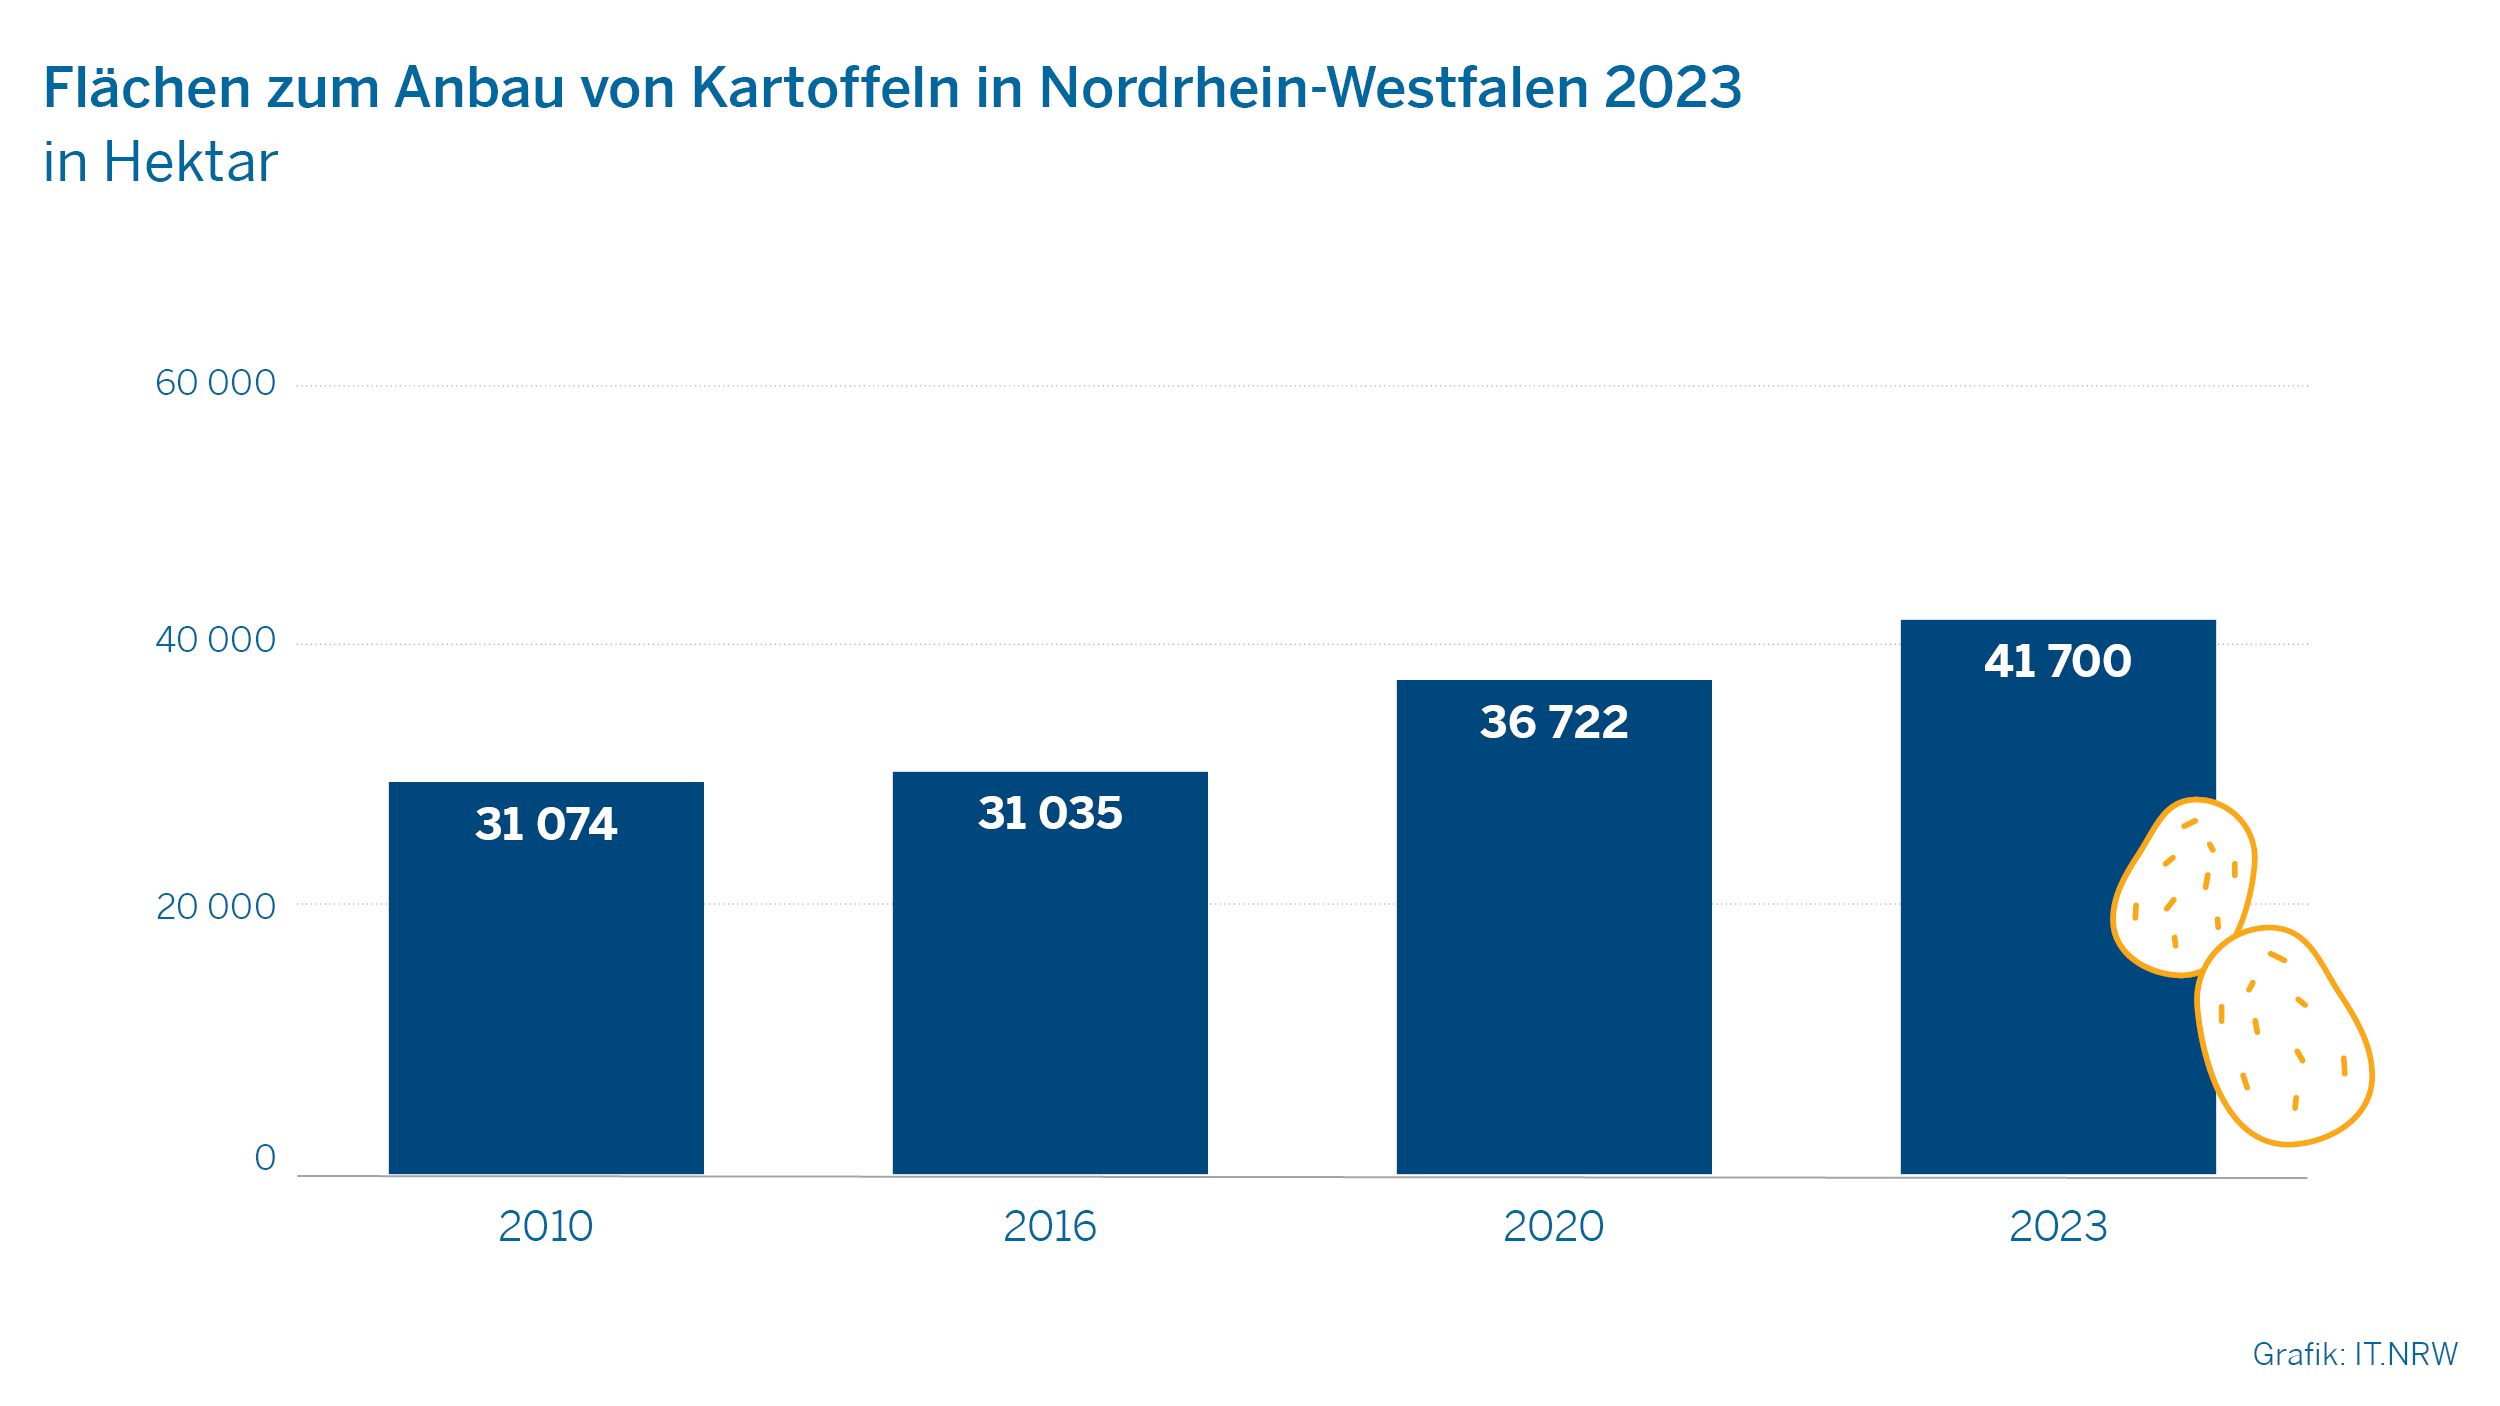 Flächen zum Anbau von Kartoffeln in Nordrhein-Westfalen 2023